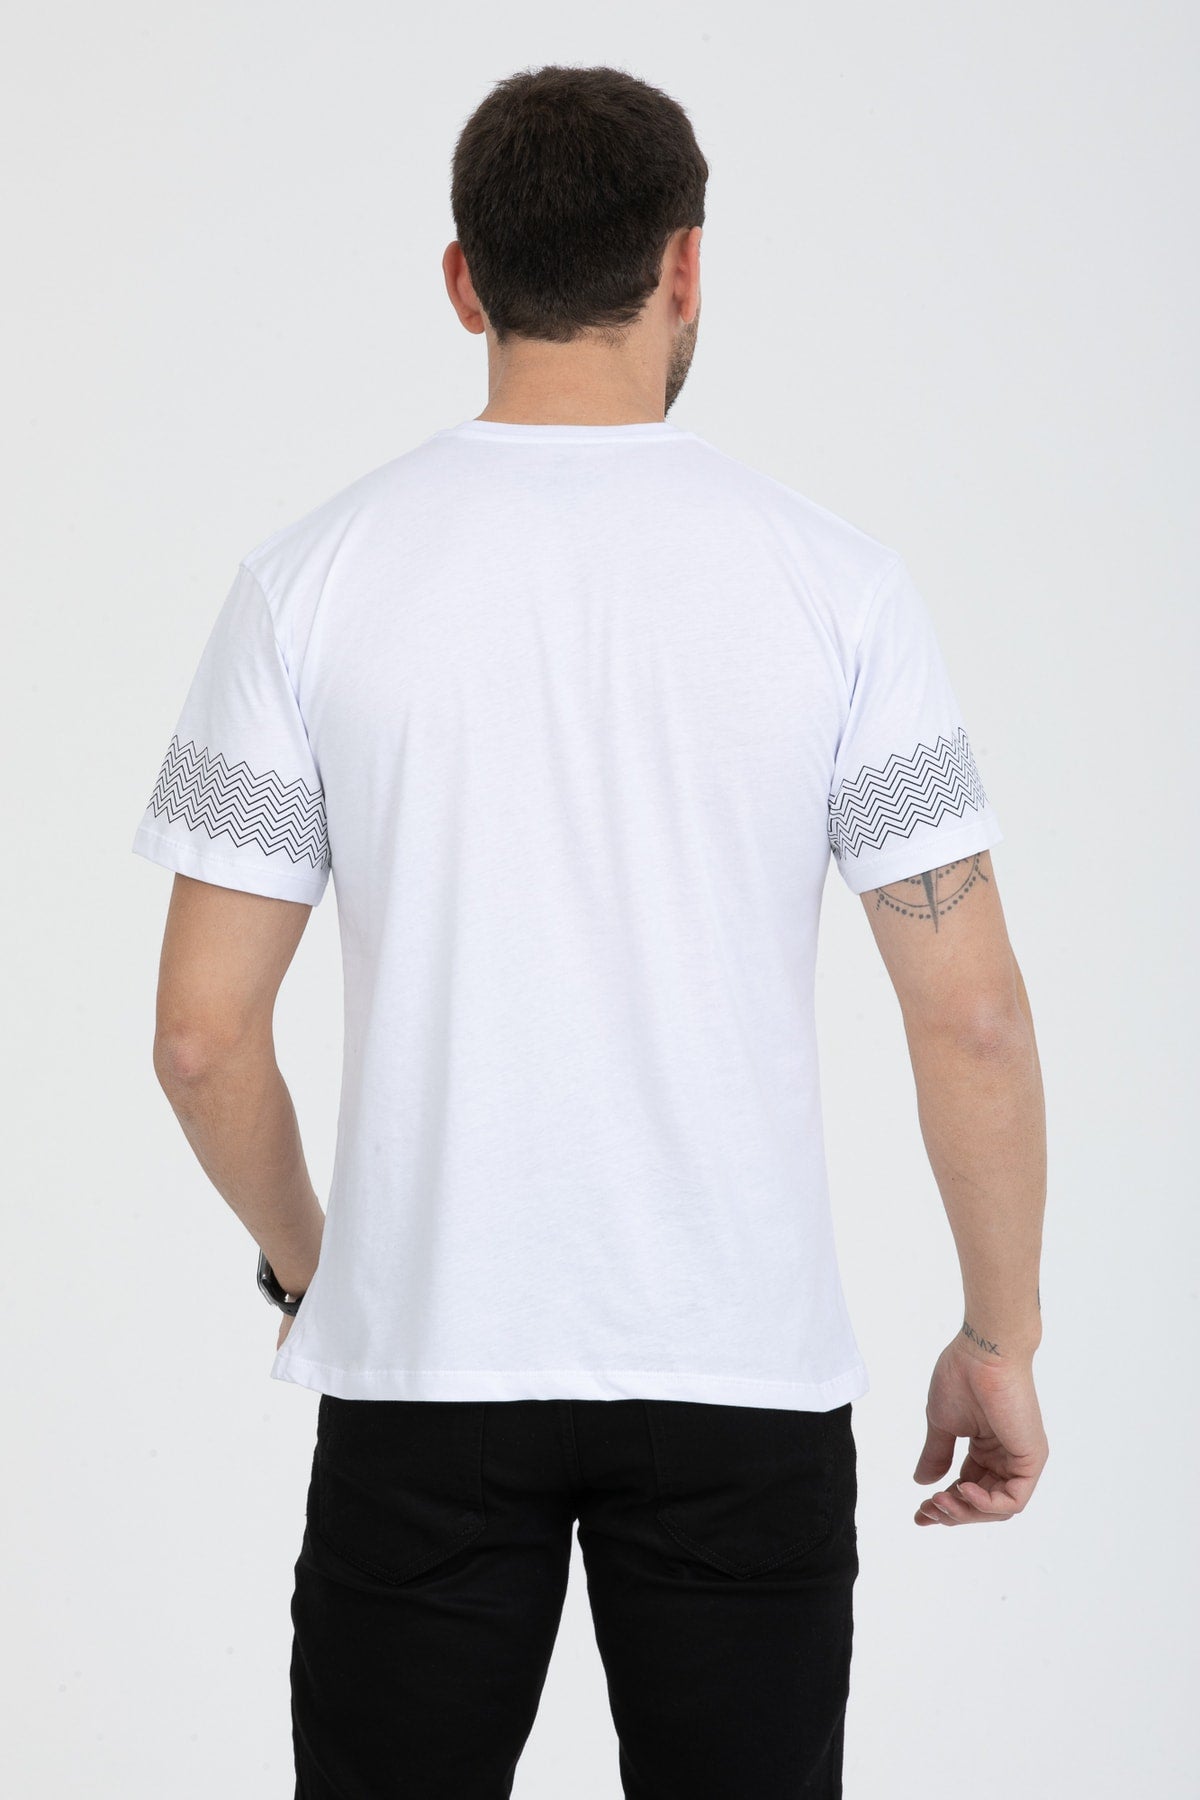 Men's Basic T-Shirt Regular Fit